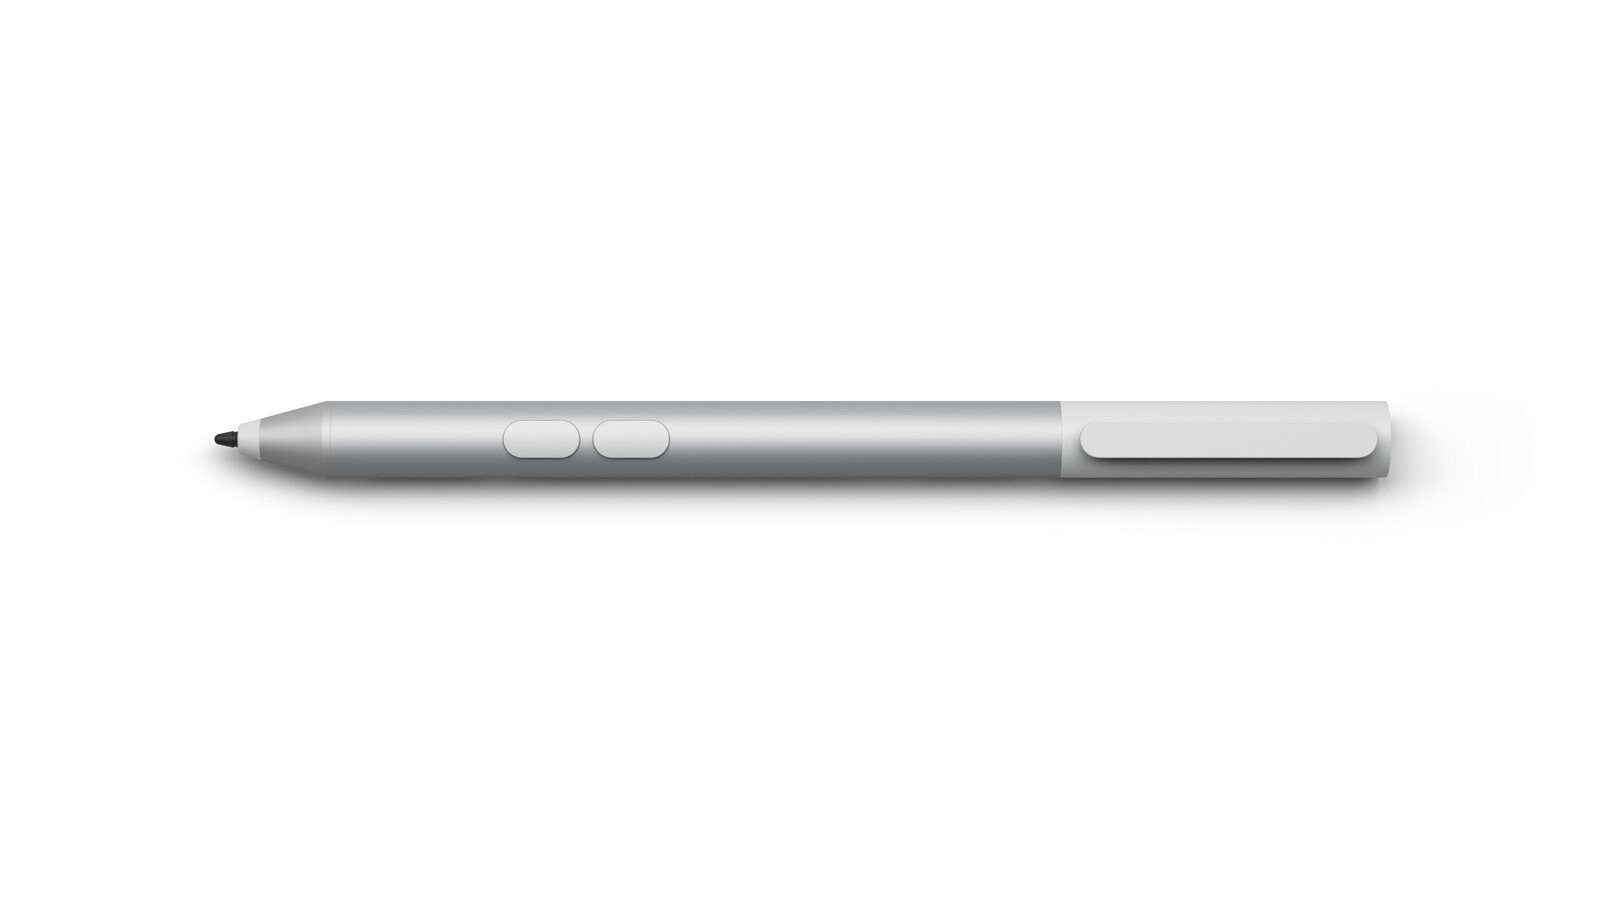 Microsoft Classroom Pen 2 стилус 8 g Платиновый IVD-00001